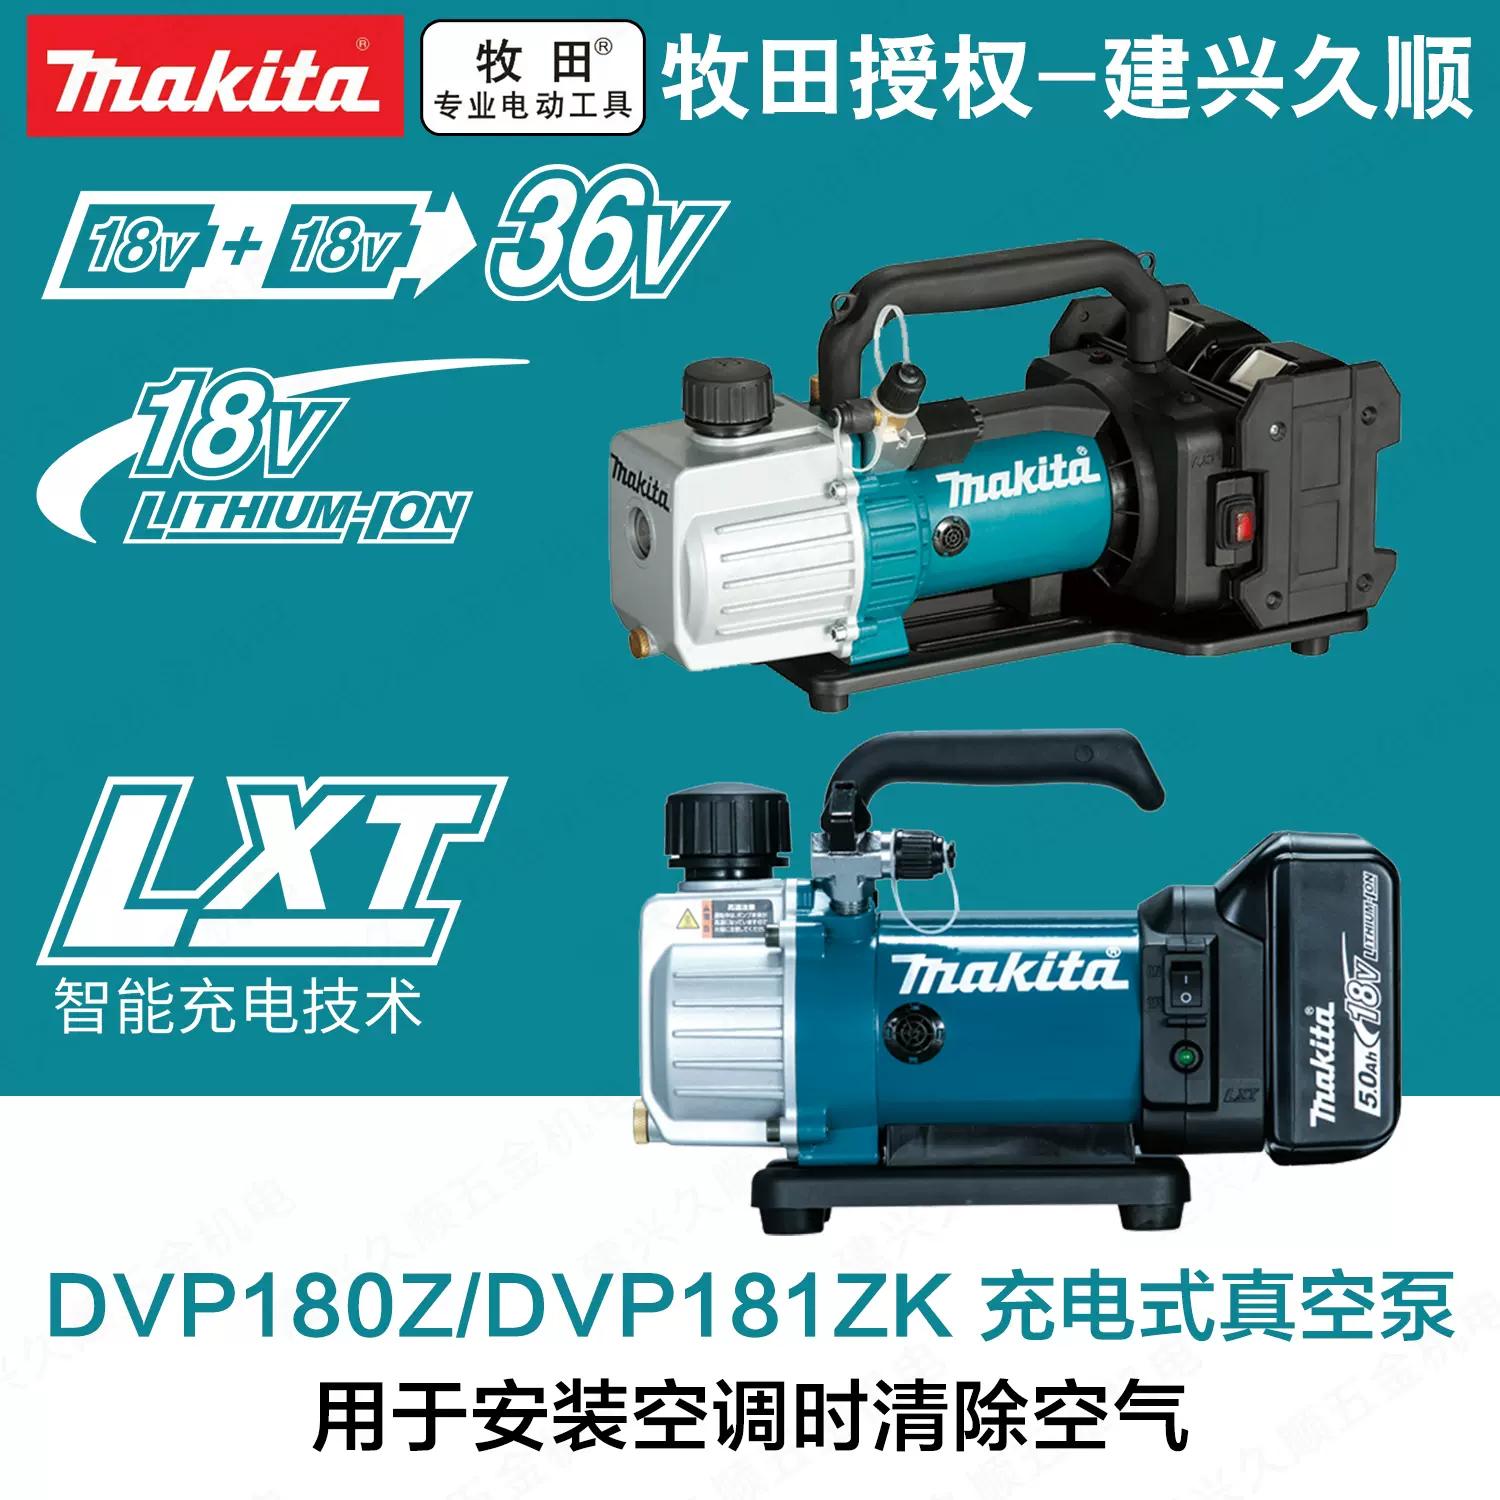 DVP181 - Vakuumpumpe LXT®